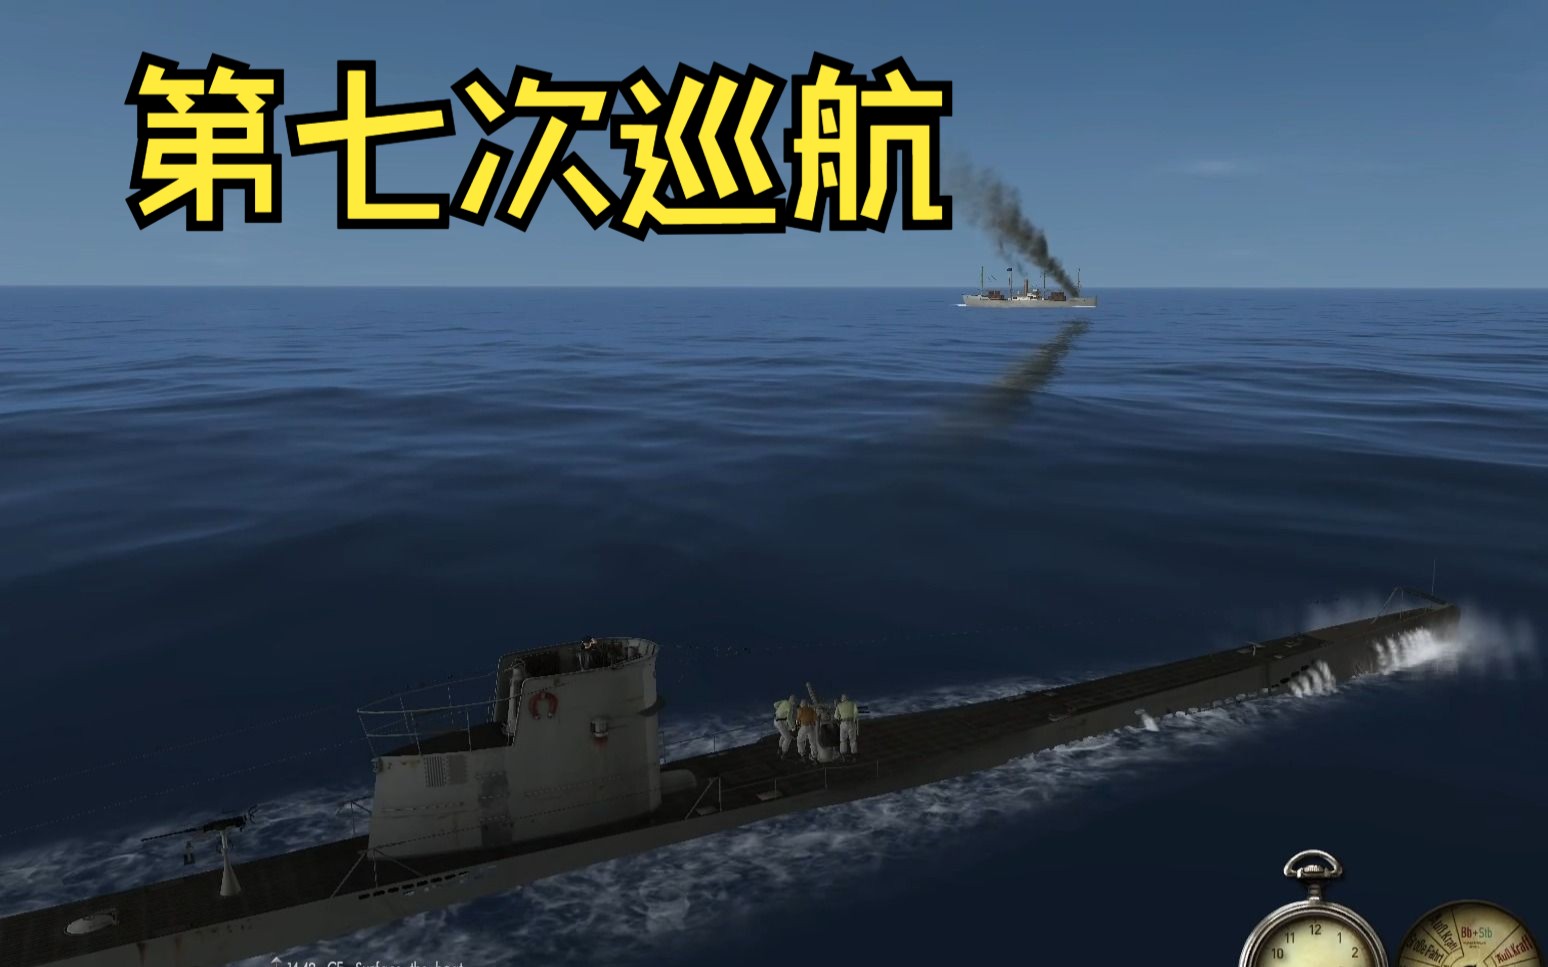 【猎杀潜航3】第15期 第七次巡航上 简单粗暴同航向法测速，击沉两条小船